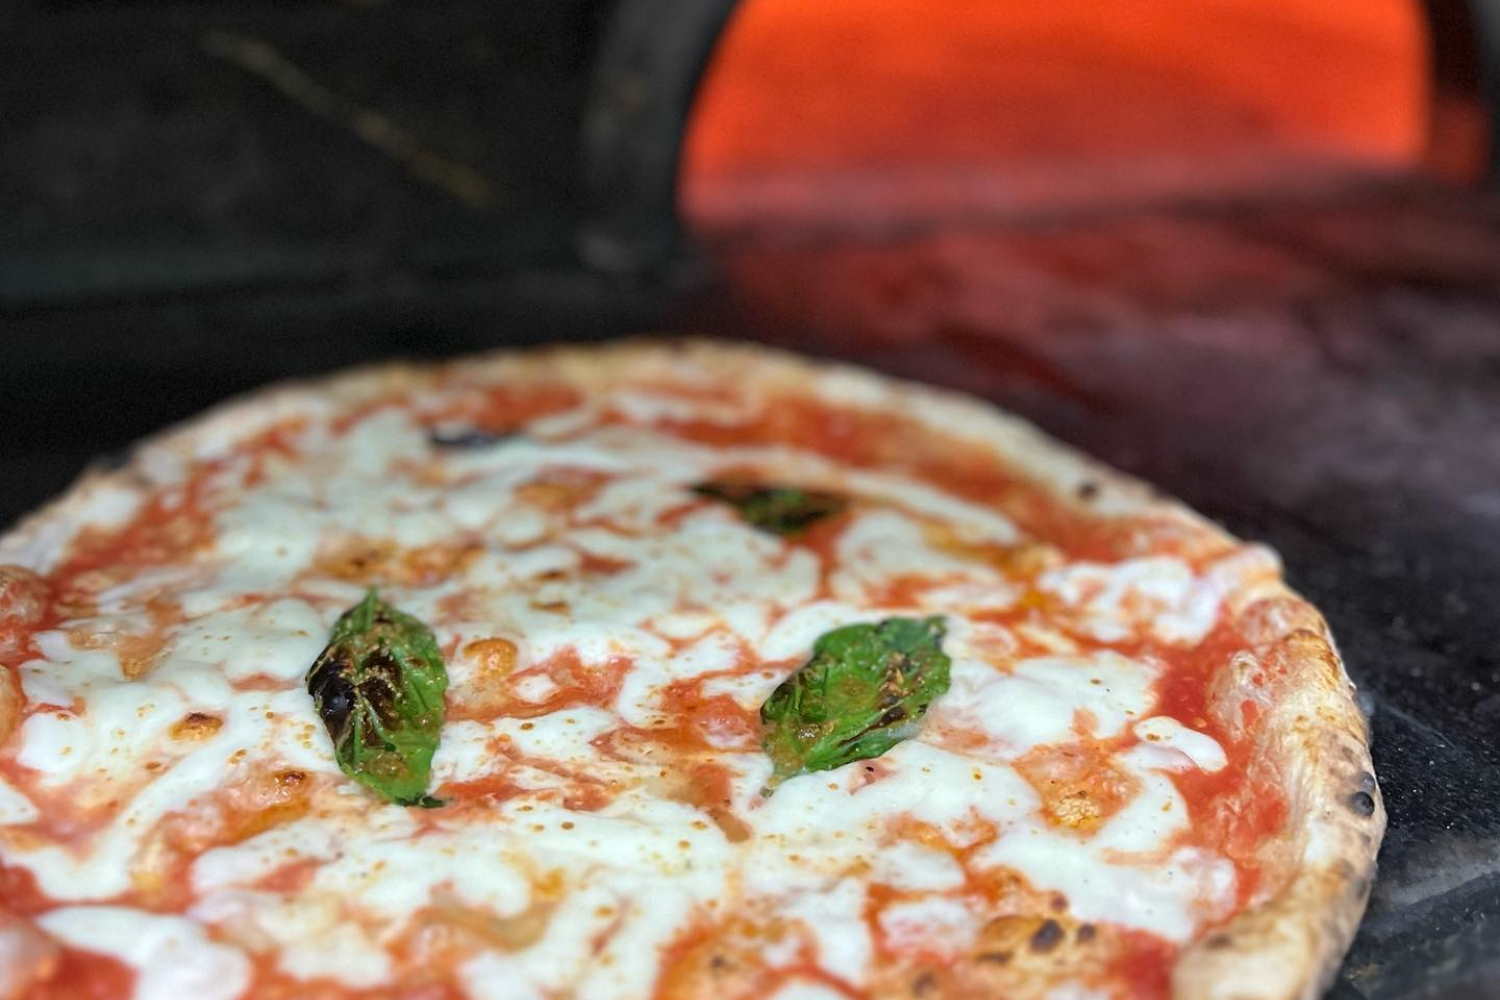 #3 Margherita pizza - Italy